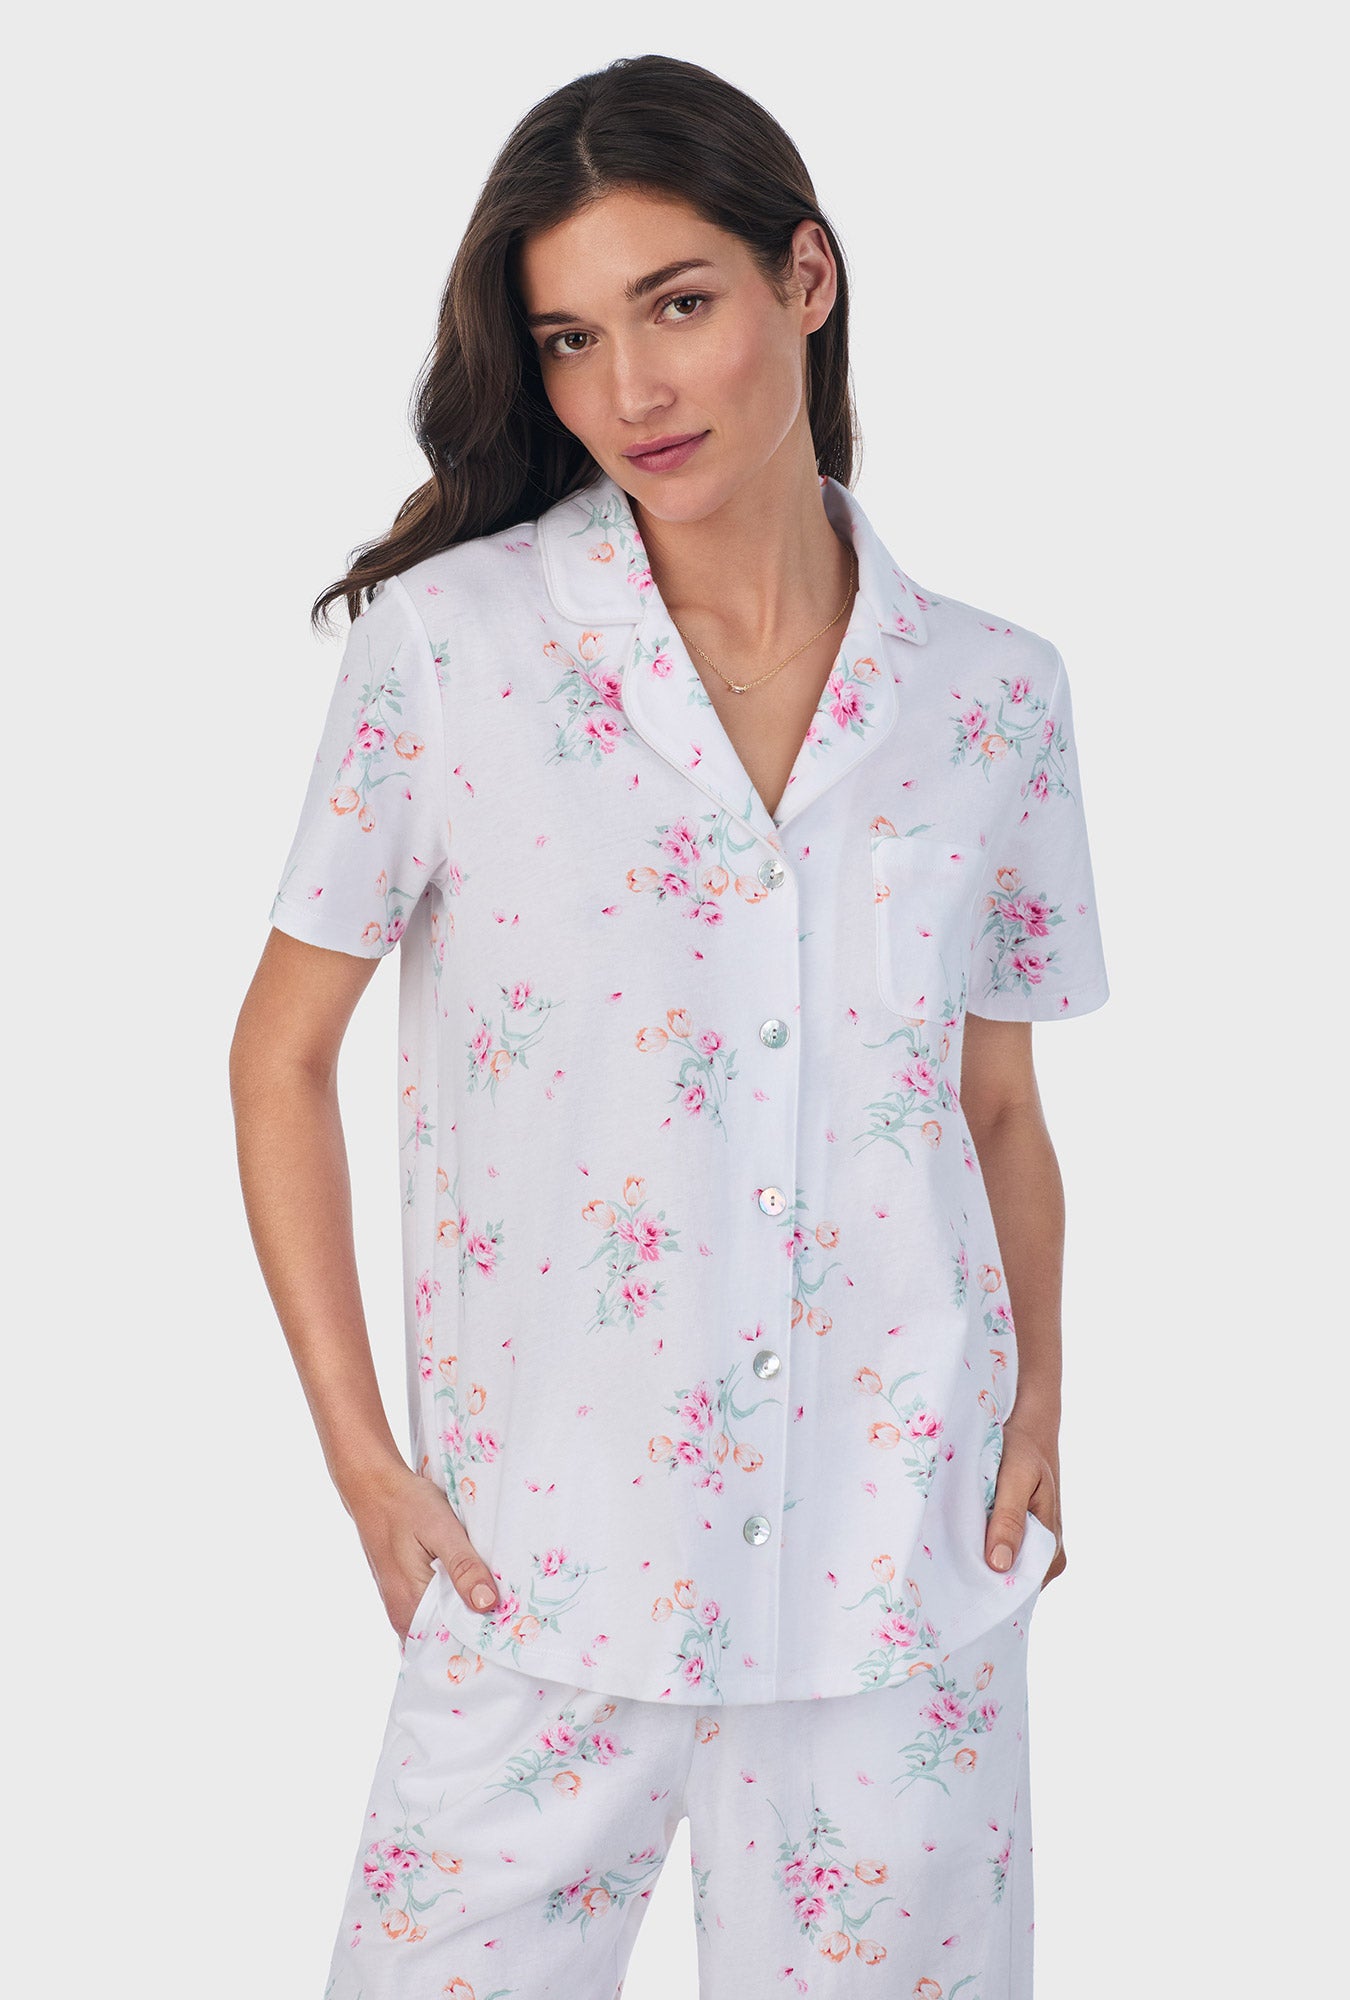 Floral Bouquet Cotton Capri Pajama Set